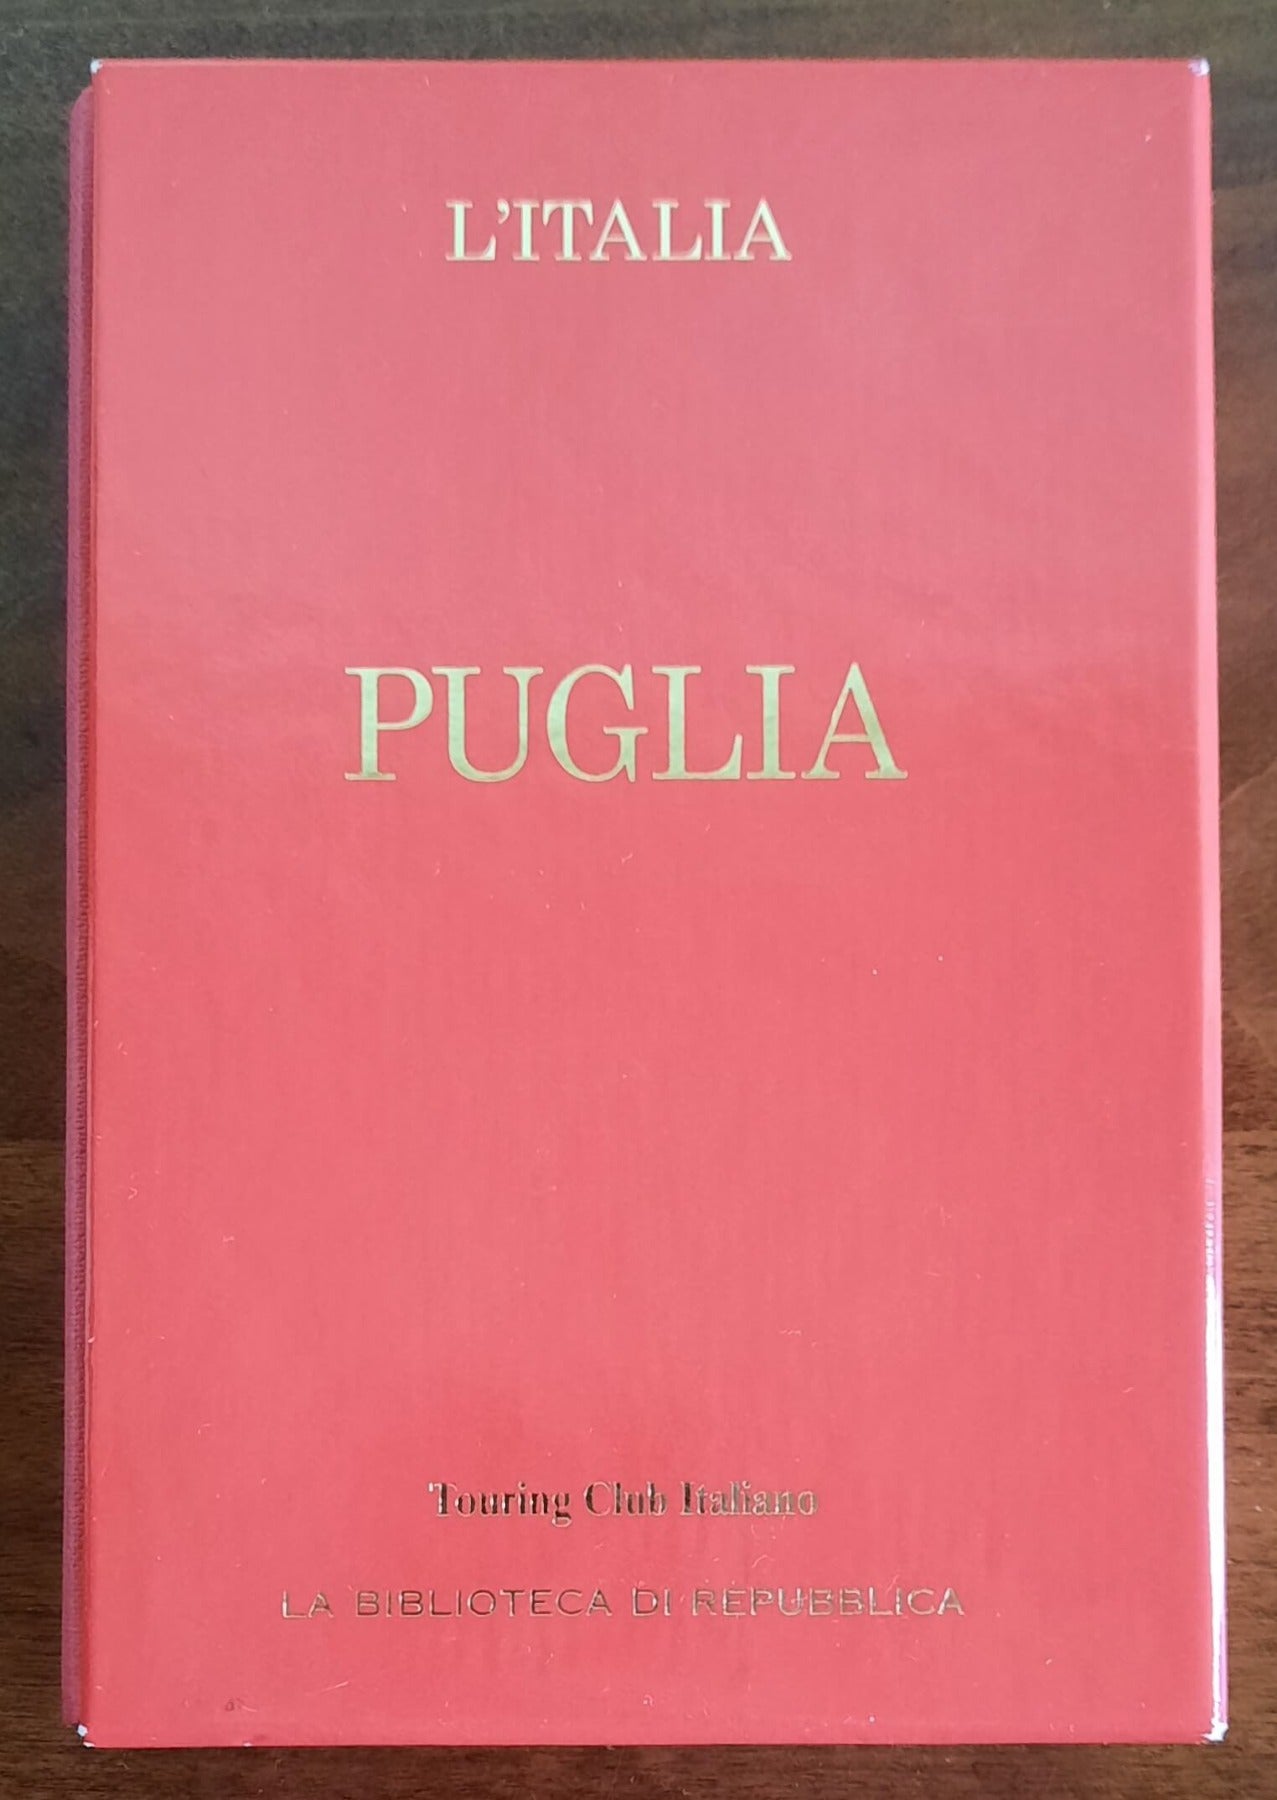 Puglia - Touring Club Italiano - La Biblioteca Di Repubblica